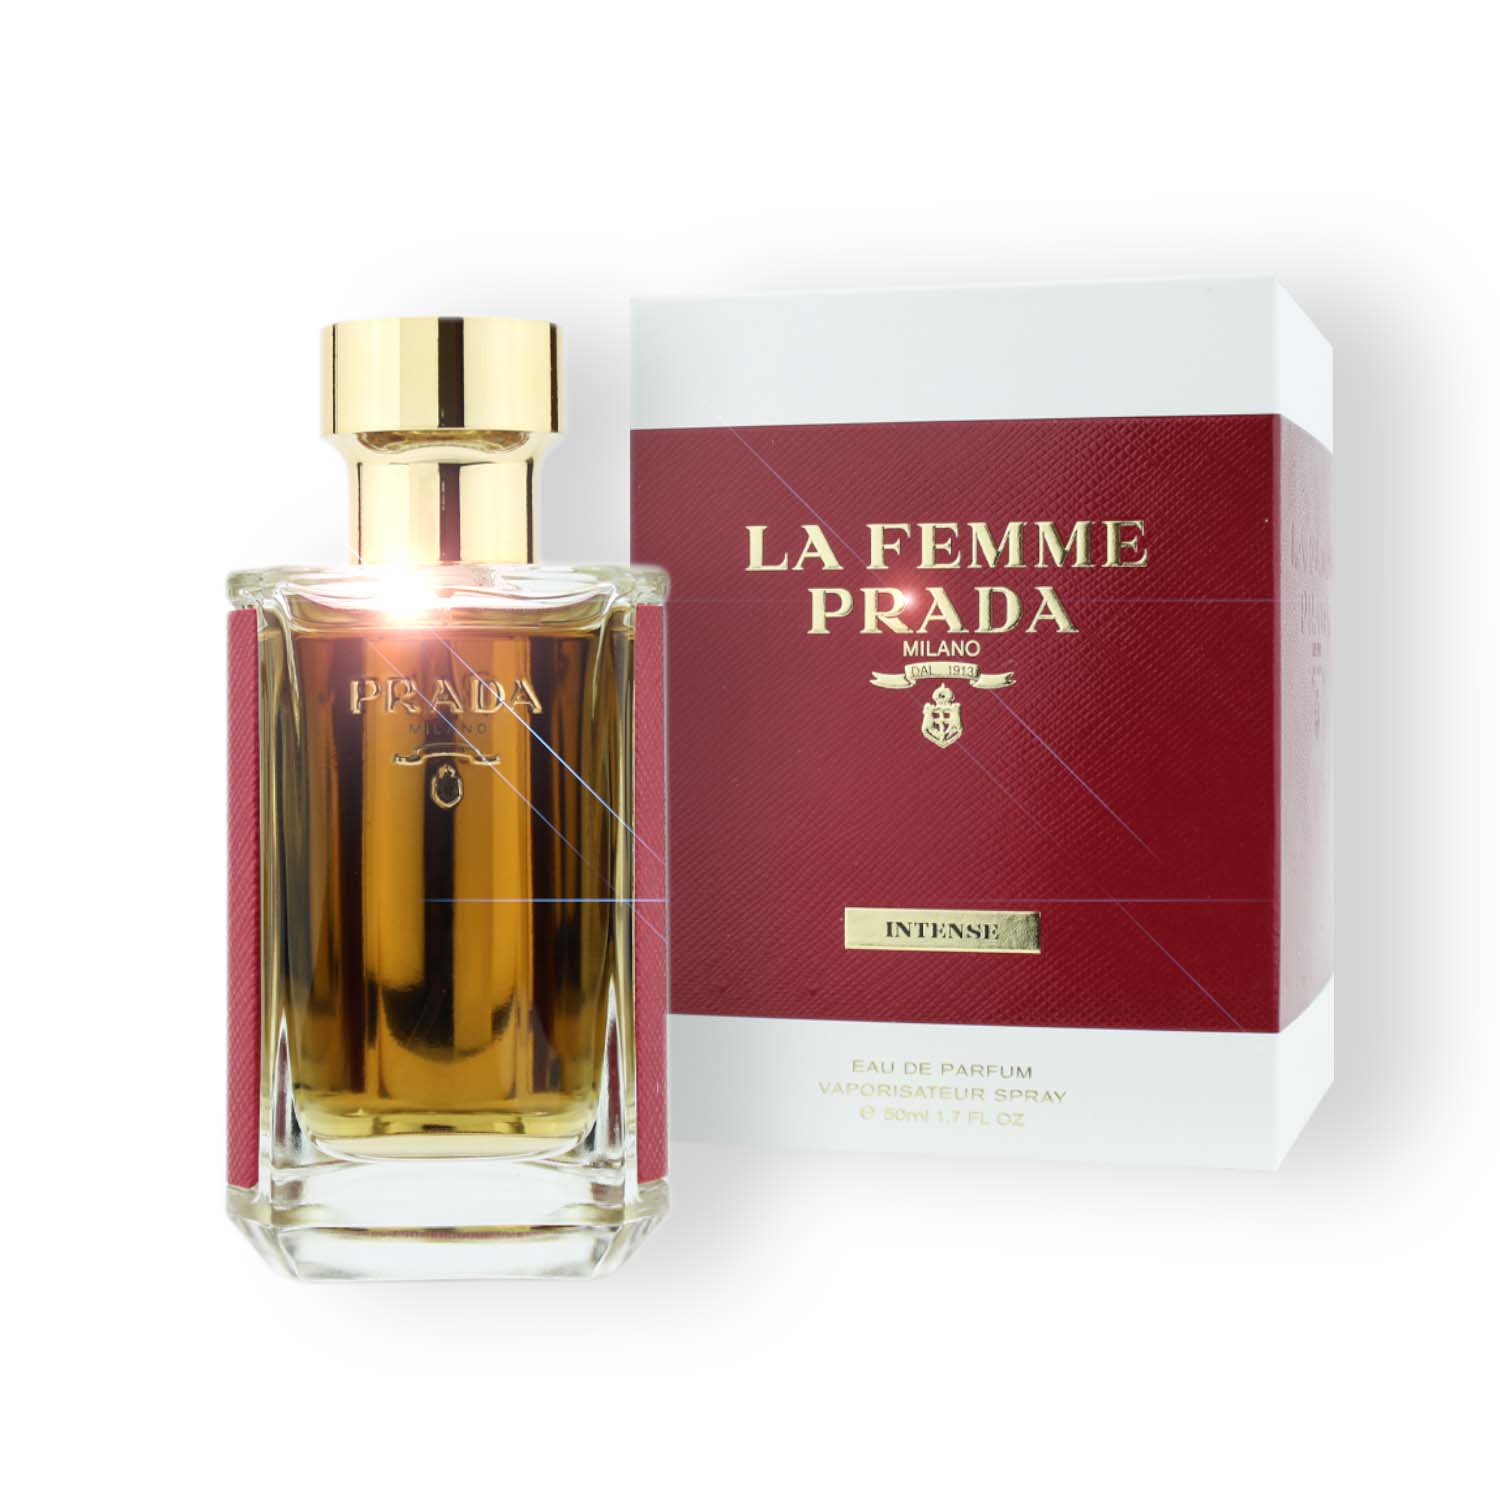 Prada La Femme Prada Intense Eau de Parfum 50ml